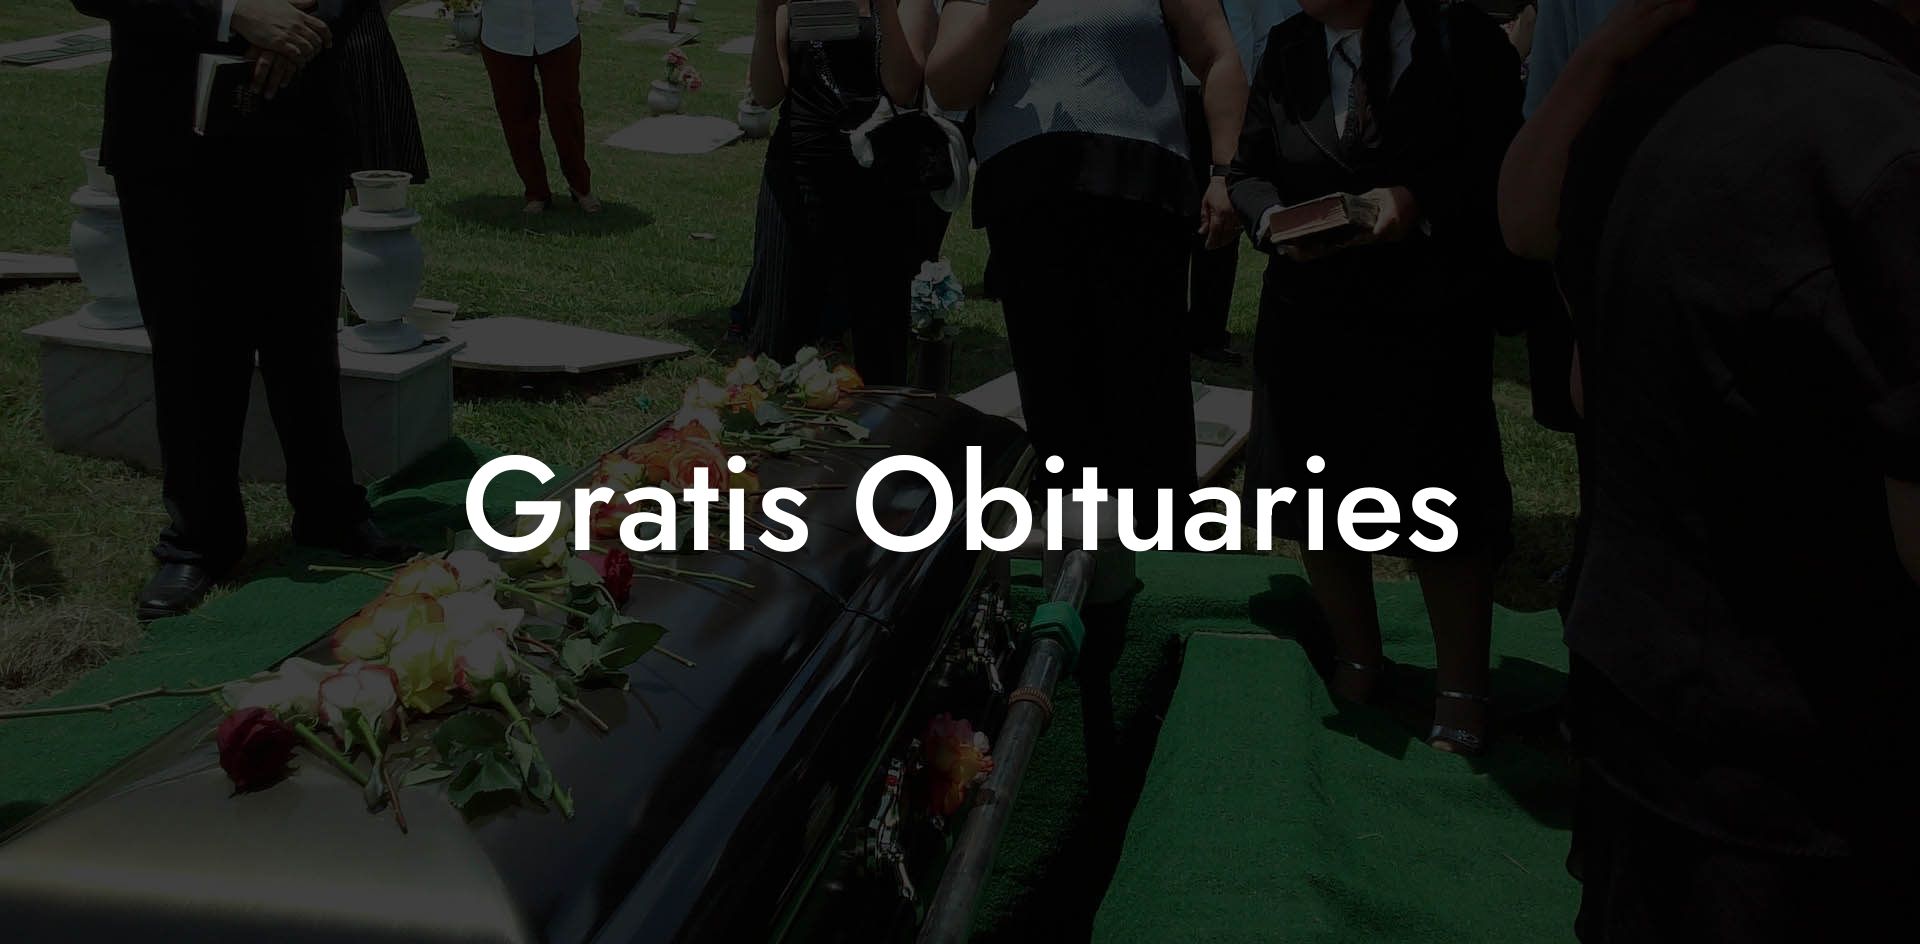 Gratis Obituaries